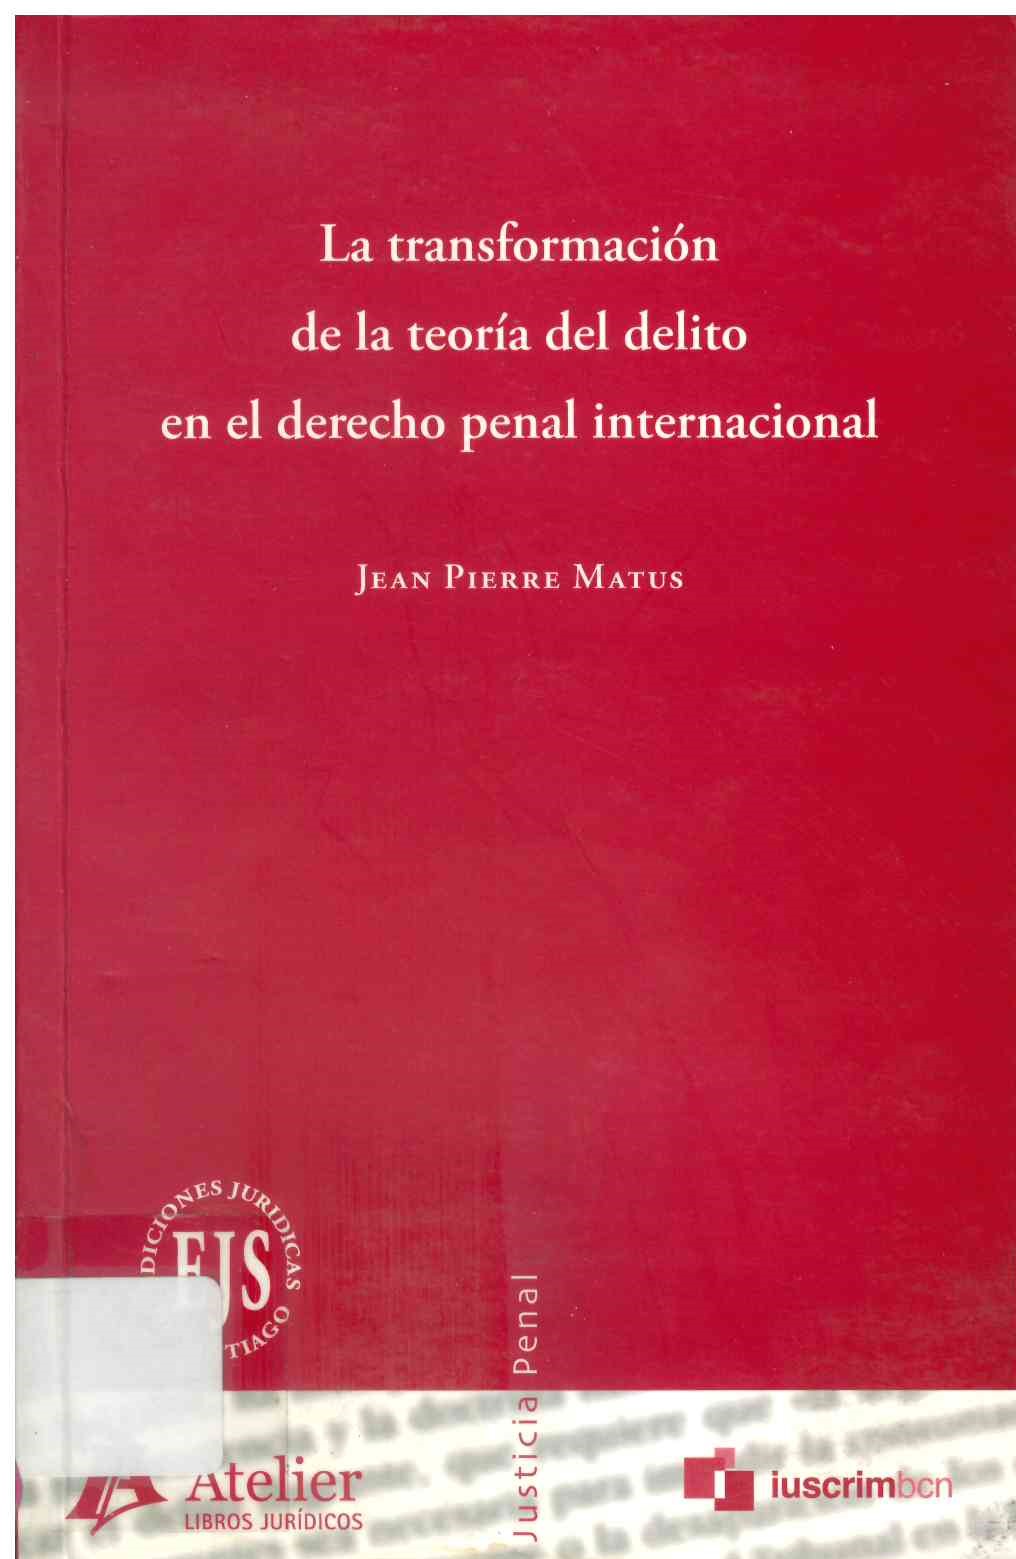 La transformación de la teoría del delito en el derecho penal internacional